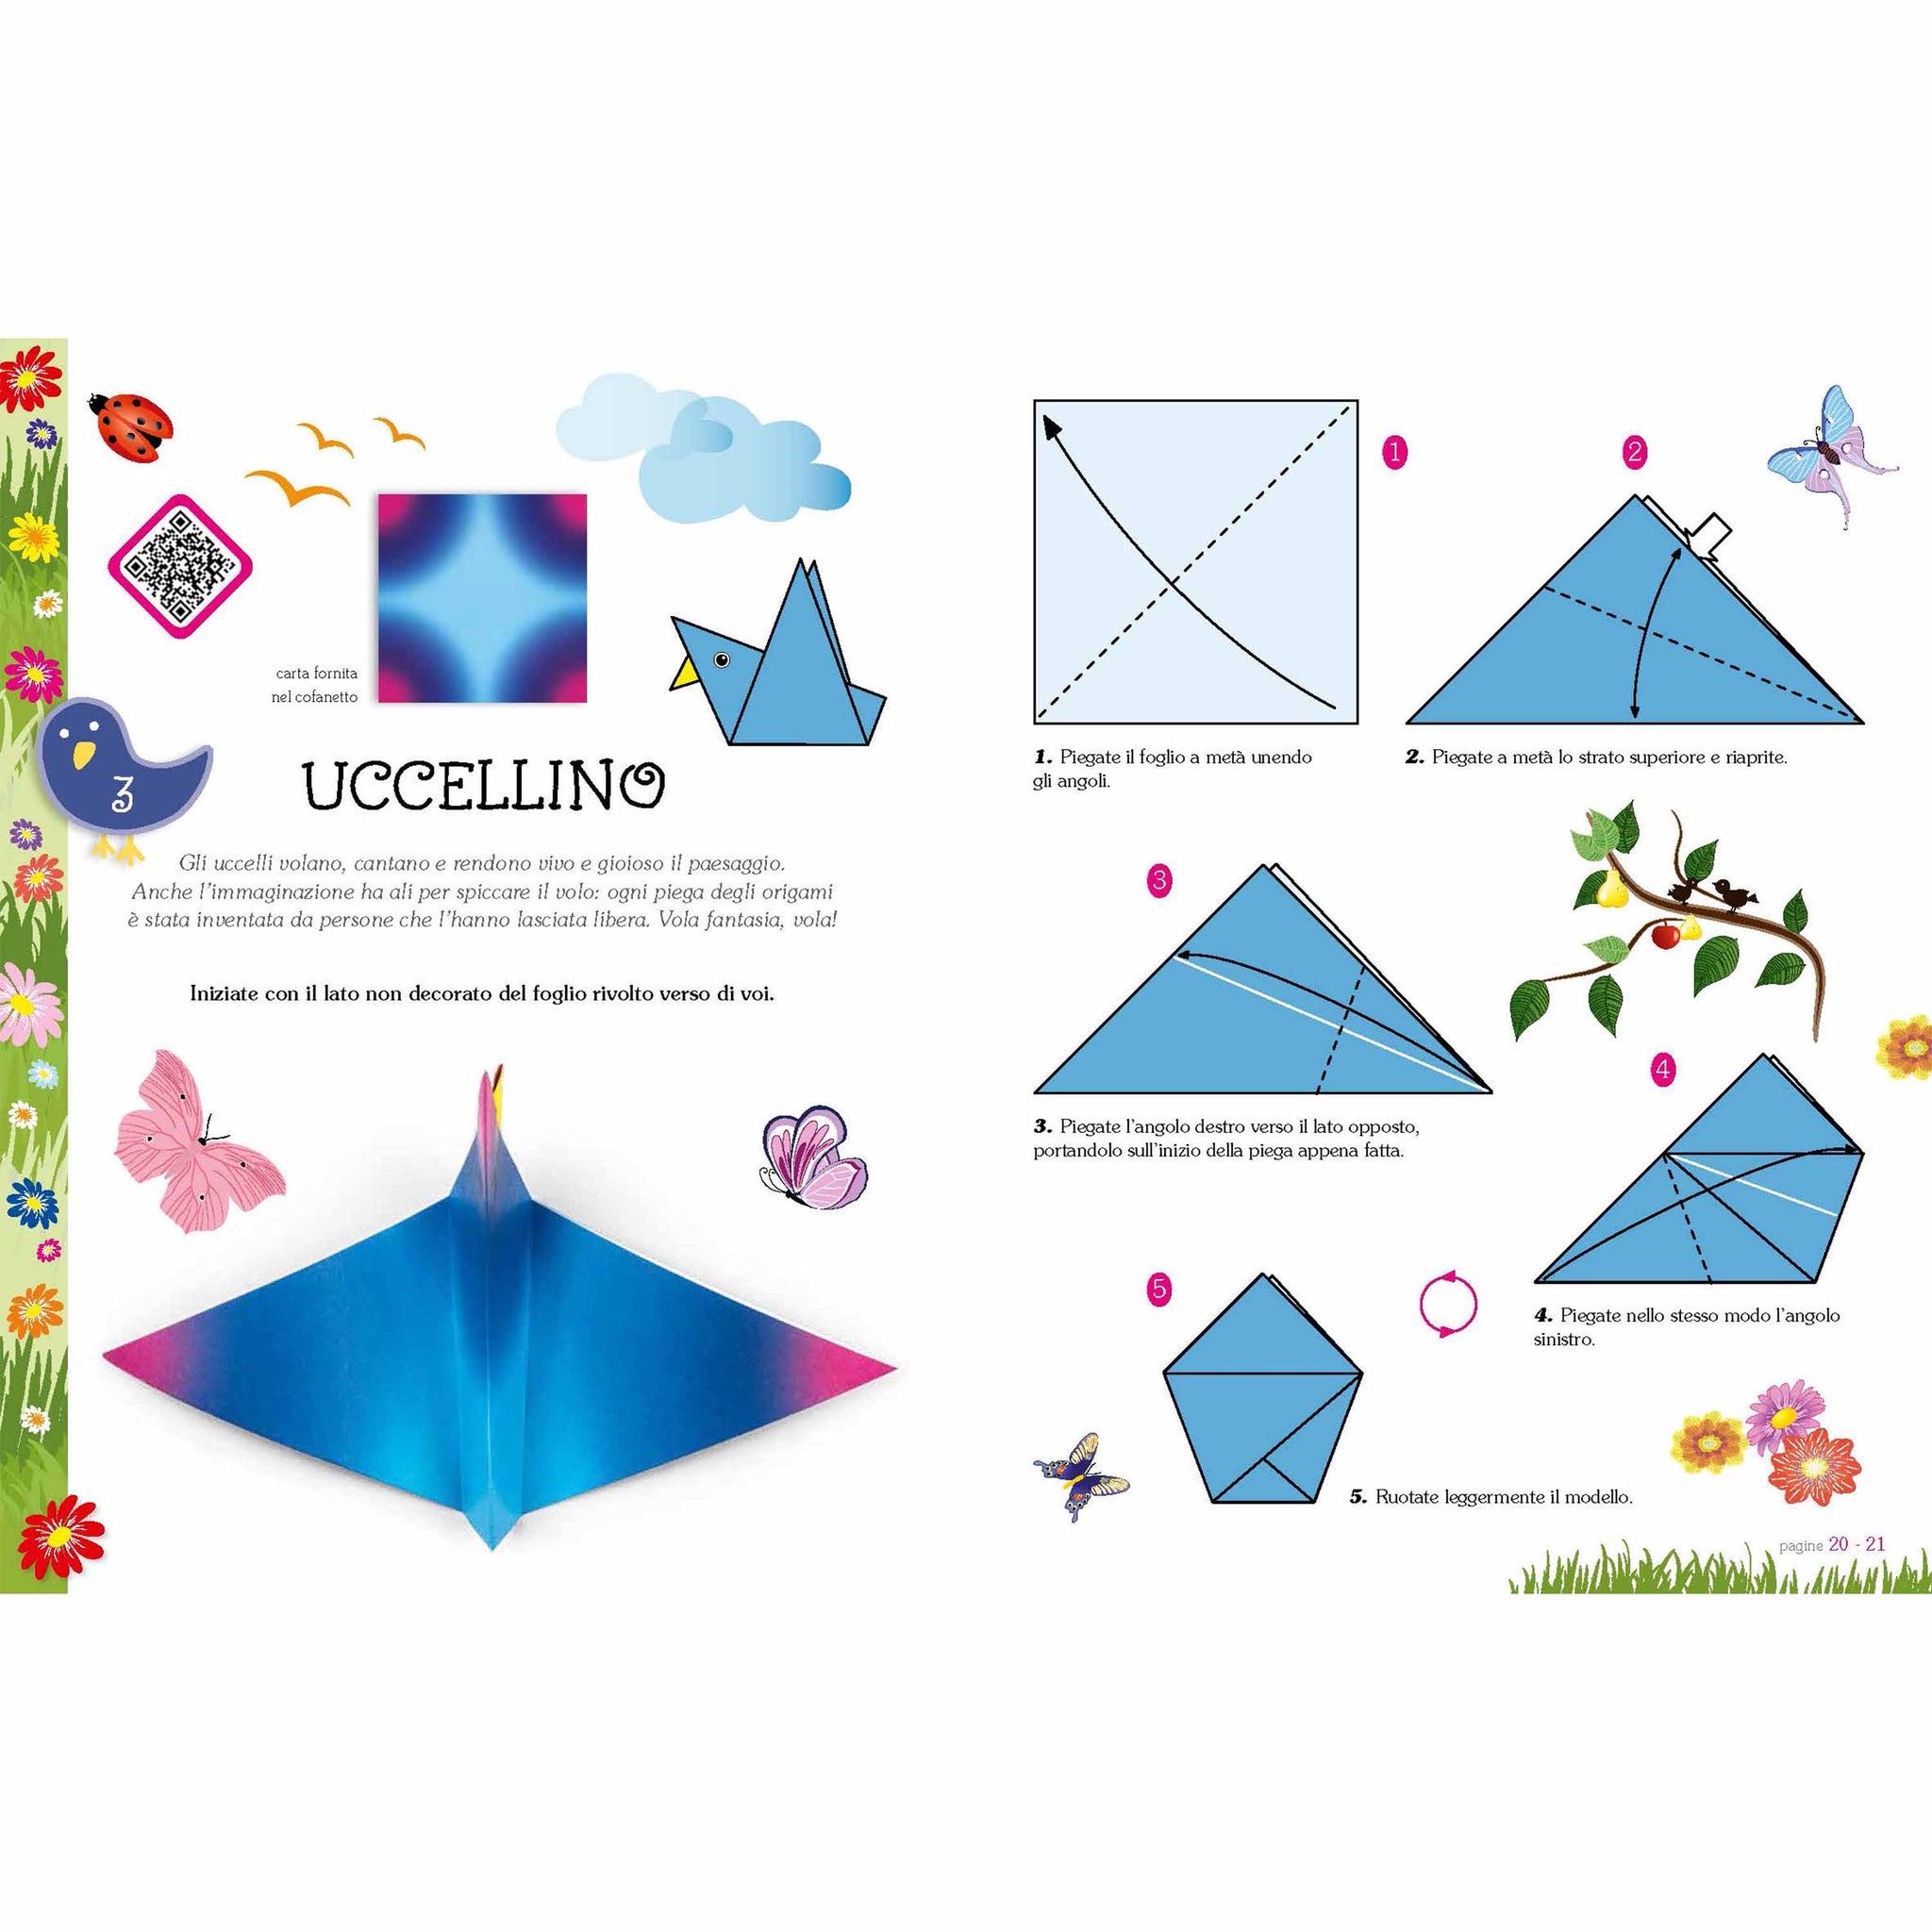 The origami garden - Easy for children